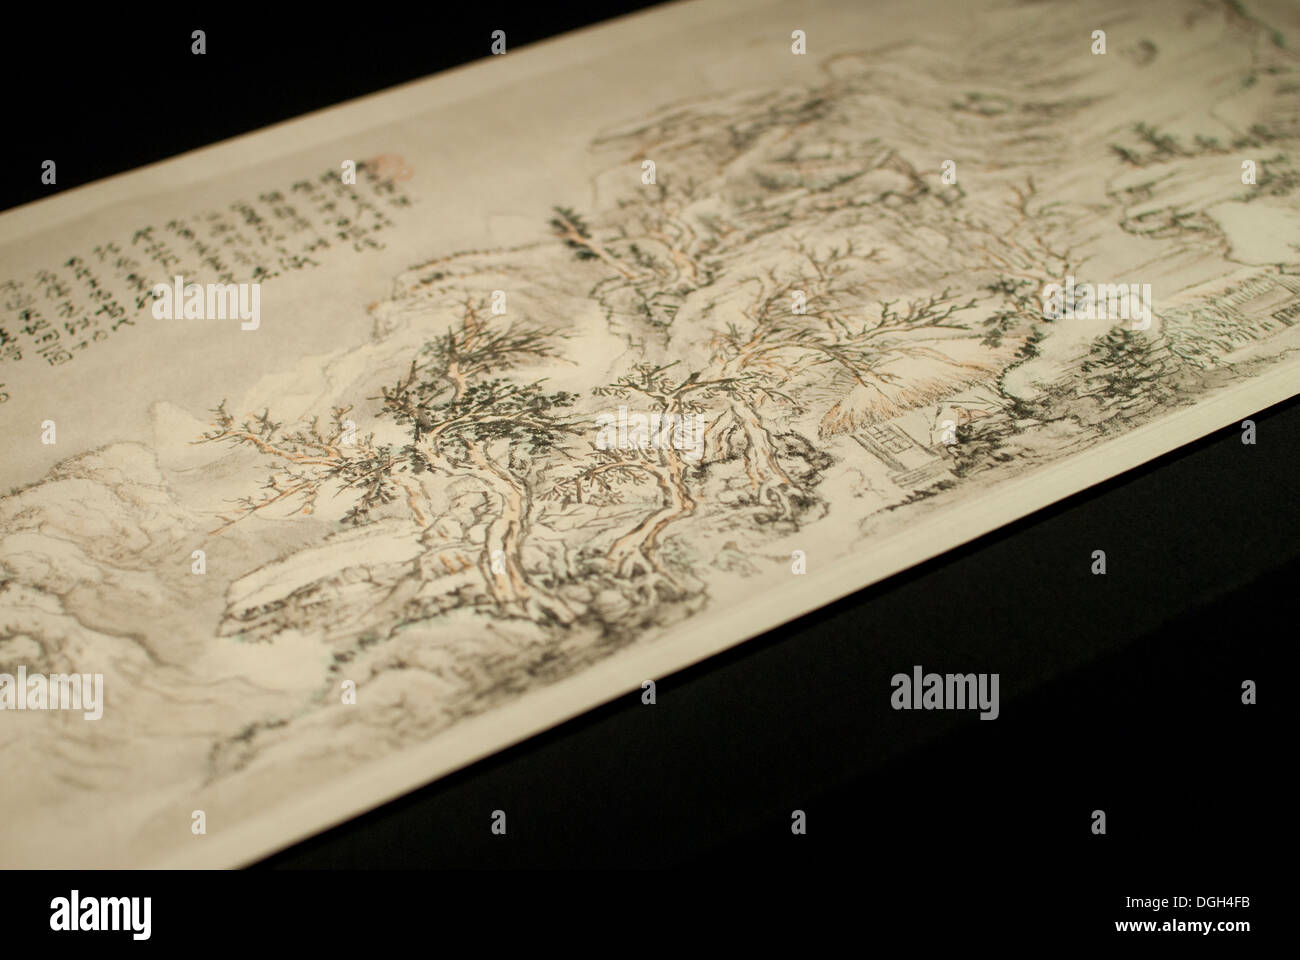 In autunno e in inverno, da monaco Zen artista Kuncan, dall'inizio della Dinastia Qing. Tesori di culture di tutto il mondo Foto Stock